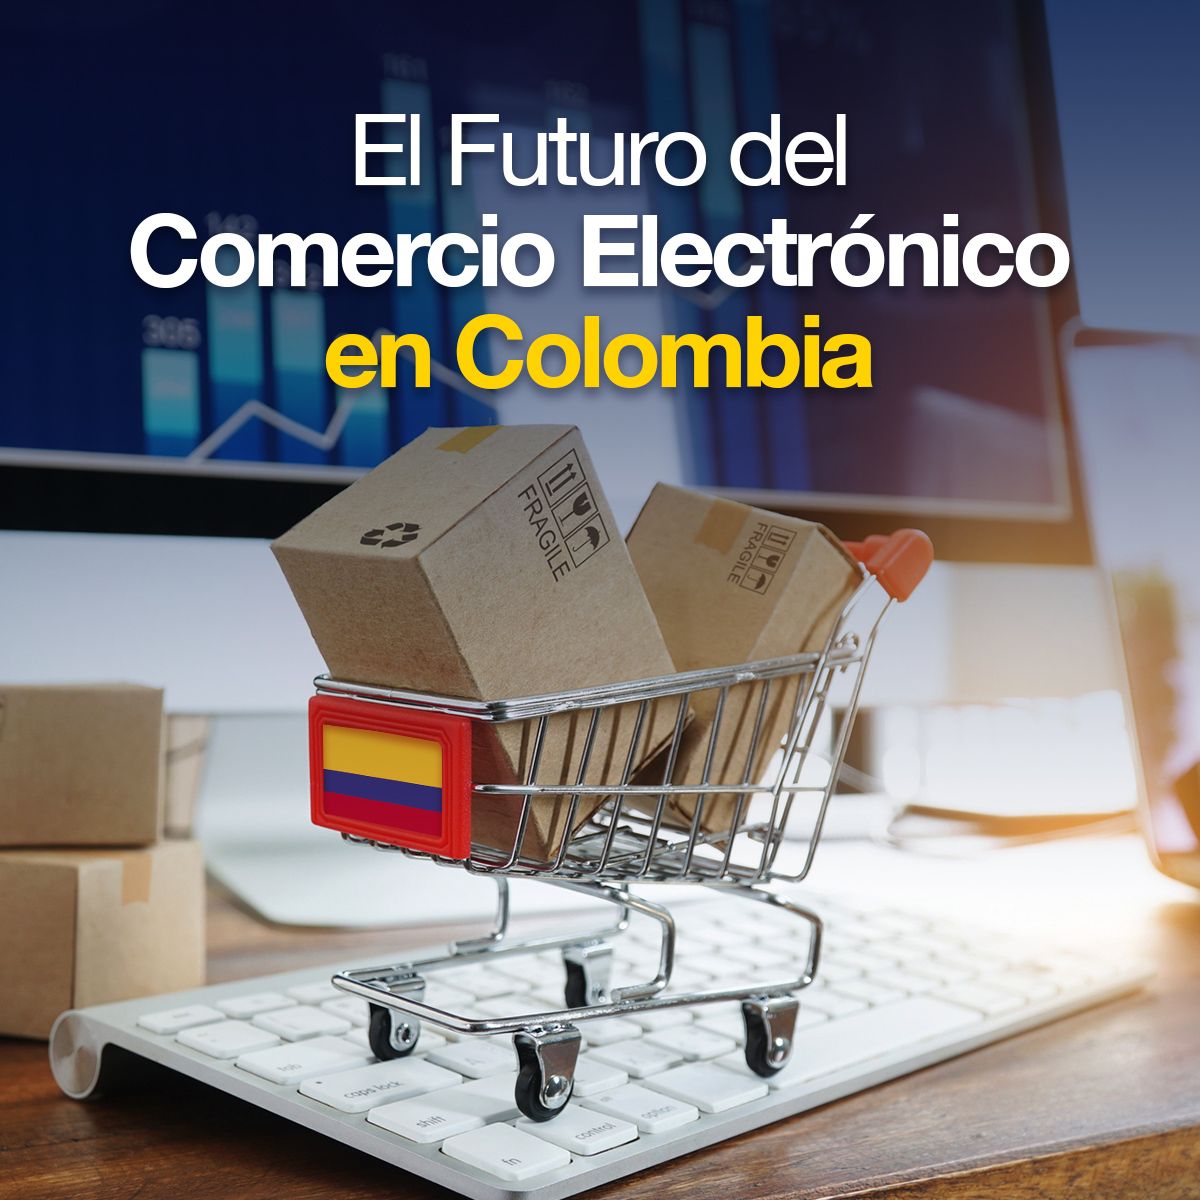 El Futuro del Comercio Electrónico en Colombia